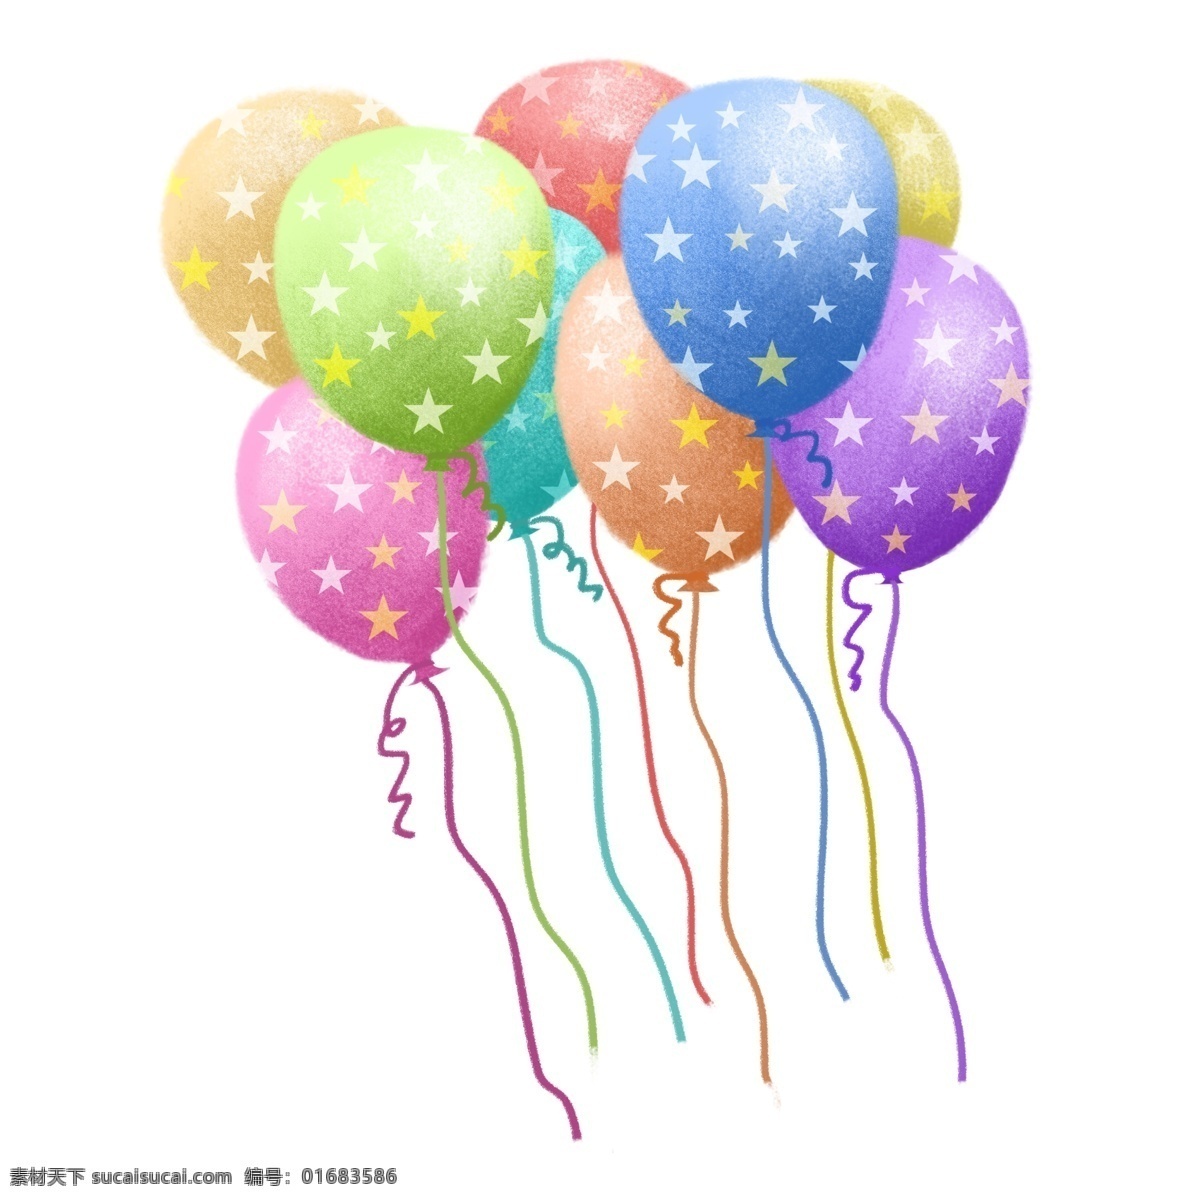 手绘 卡通 风格 彩色 气球 肌理 漂浮 天空 星星 彩带 飞 庆祝 庆生 生日 节日 商务金融 商业插画